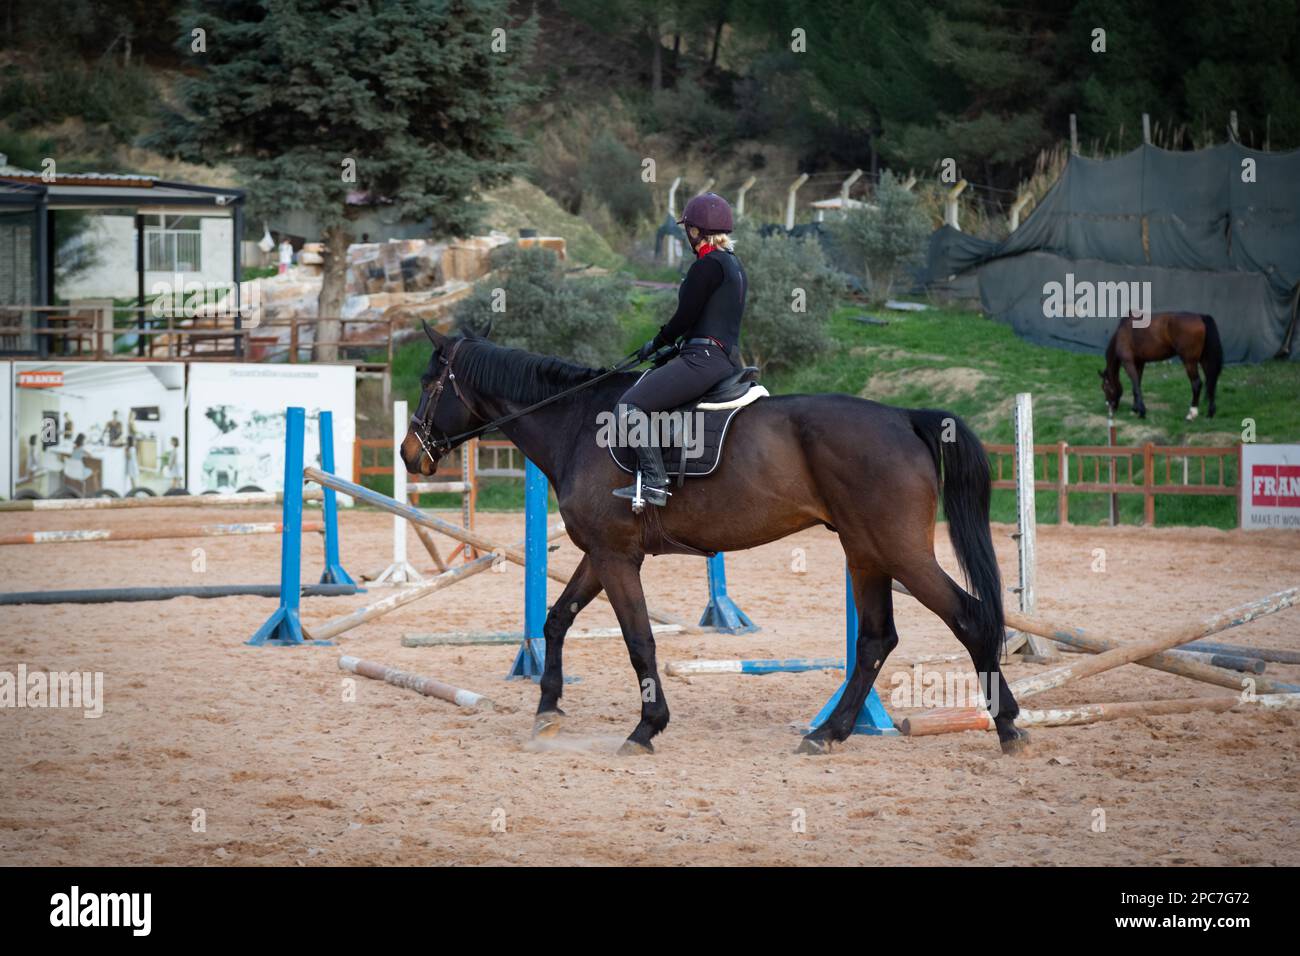 Images époustouflantes de femmes chevaux de course à sauter au-dessus des obstacles. Femme sautant dans le manège avec un cheval. Banque D'Images